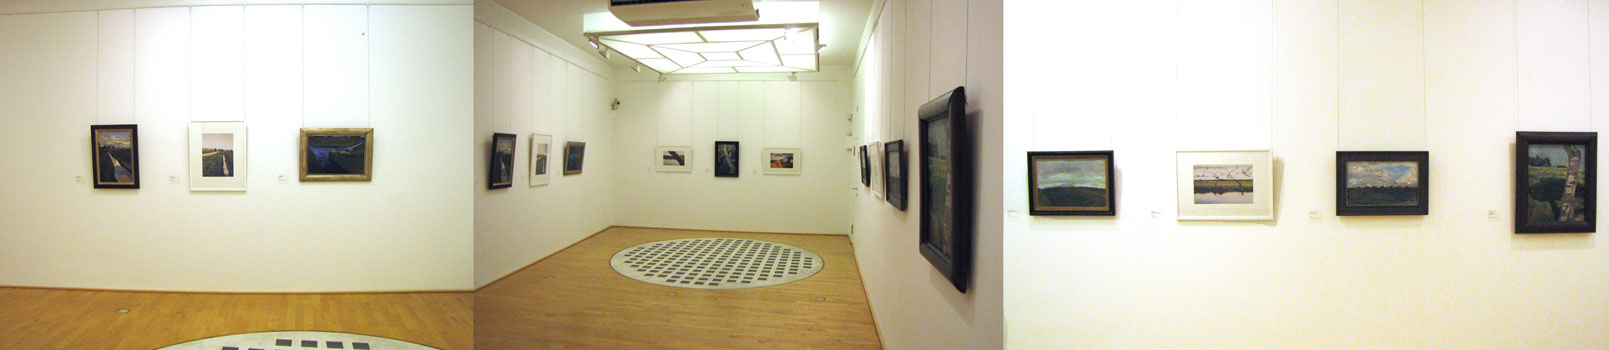 Kunstsammlungen Böttcherstraße Bremen, Paula Modersohn-Becker Museum 2011